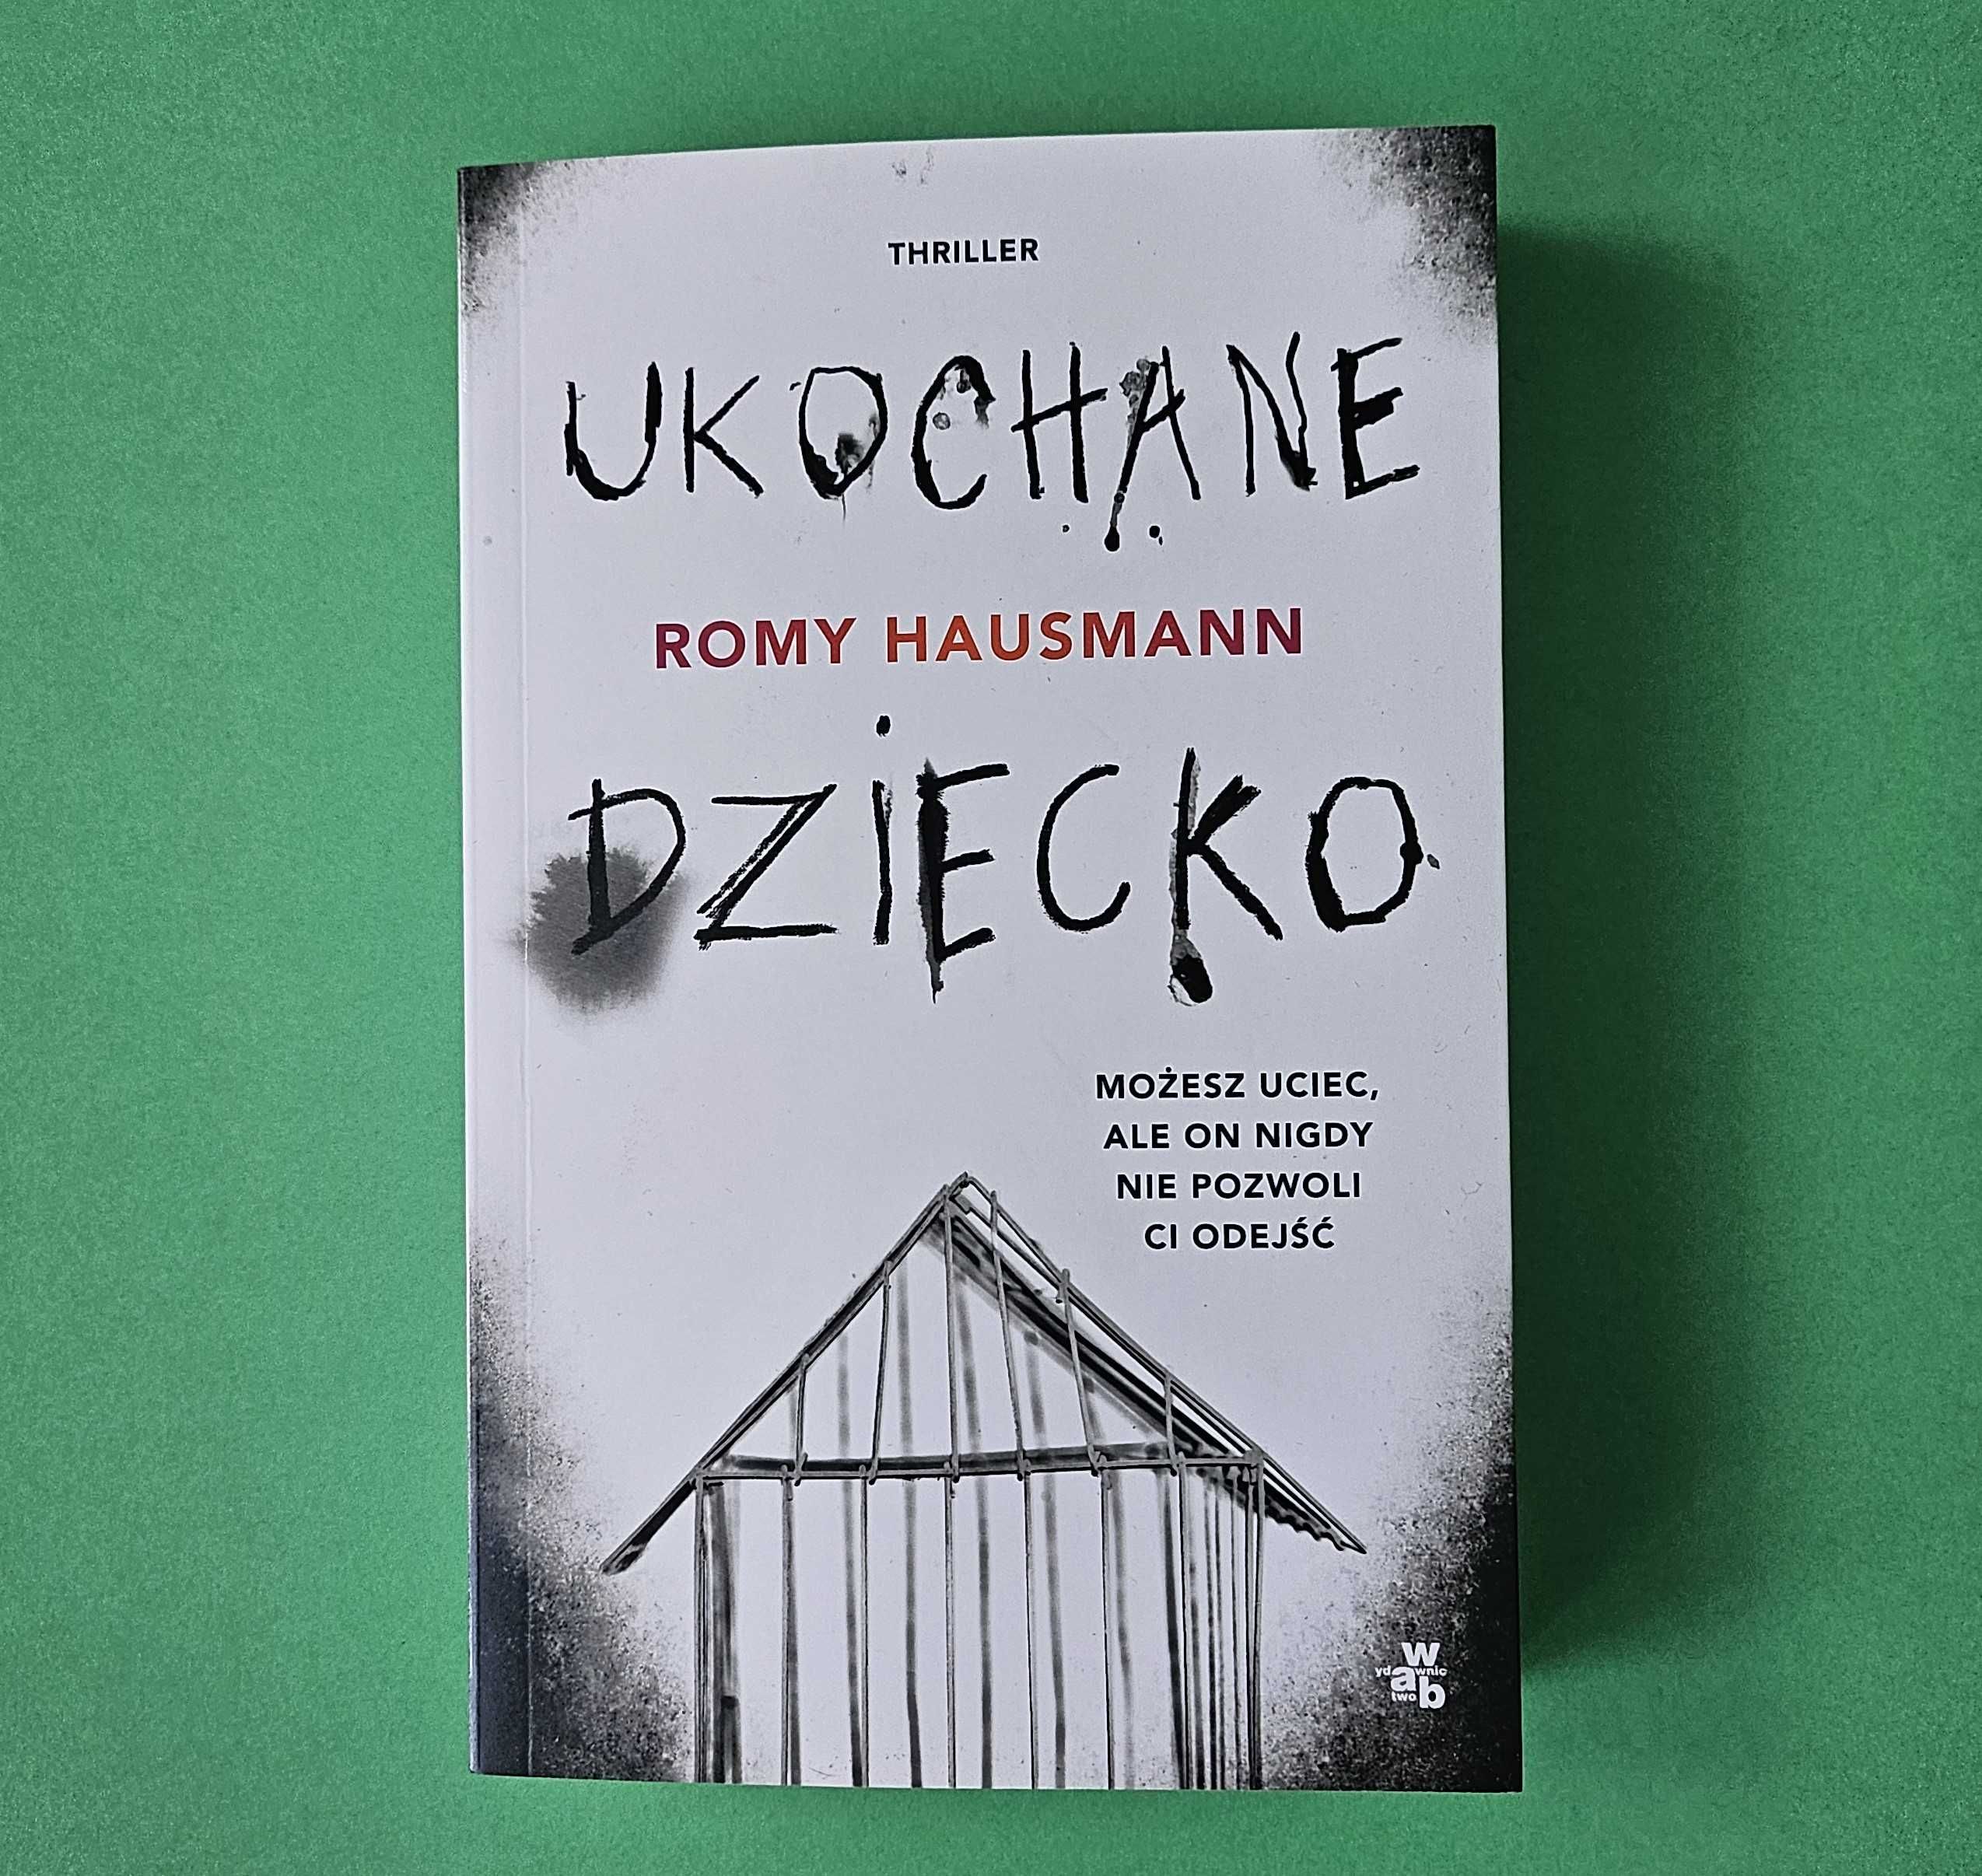 Książka "Ukochane dziecko" Romy Hausmann